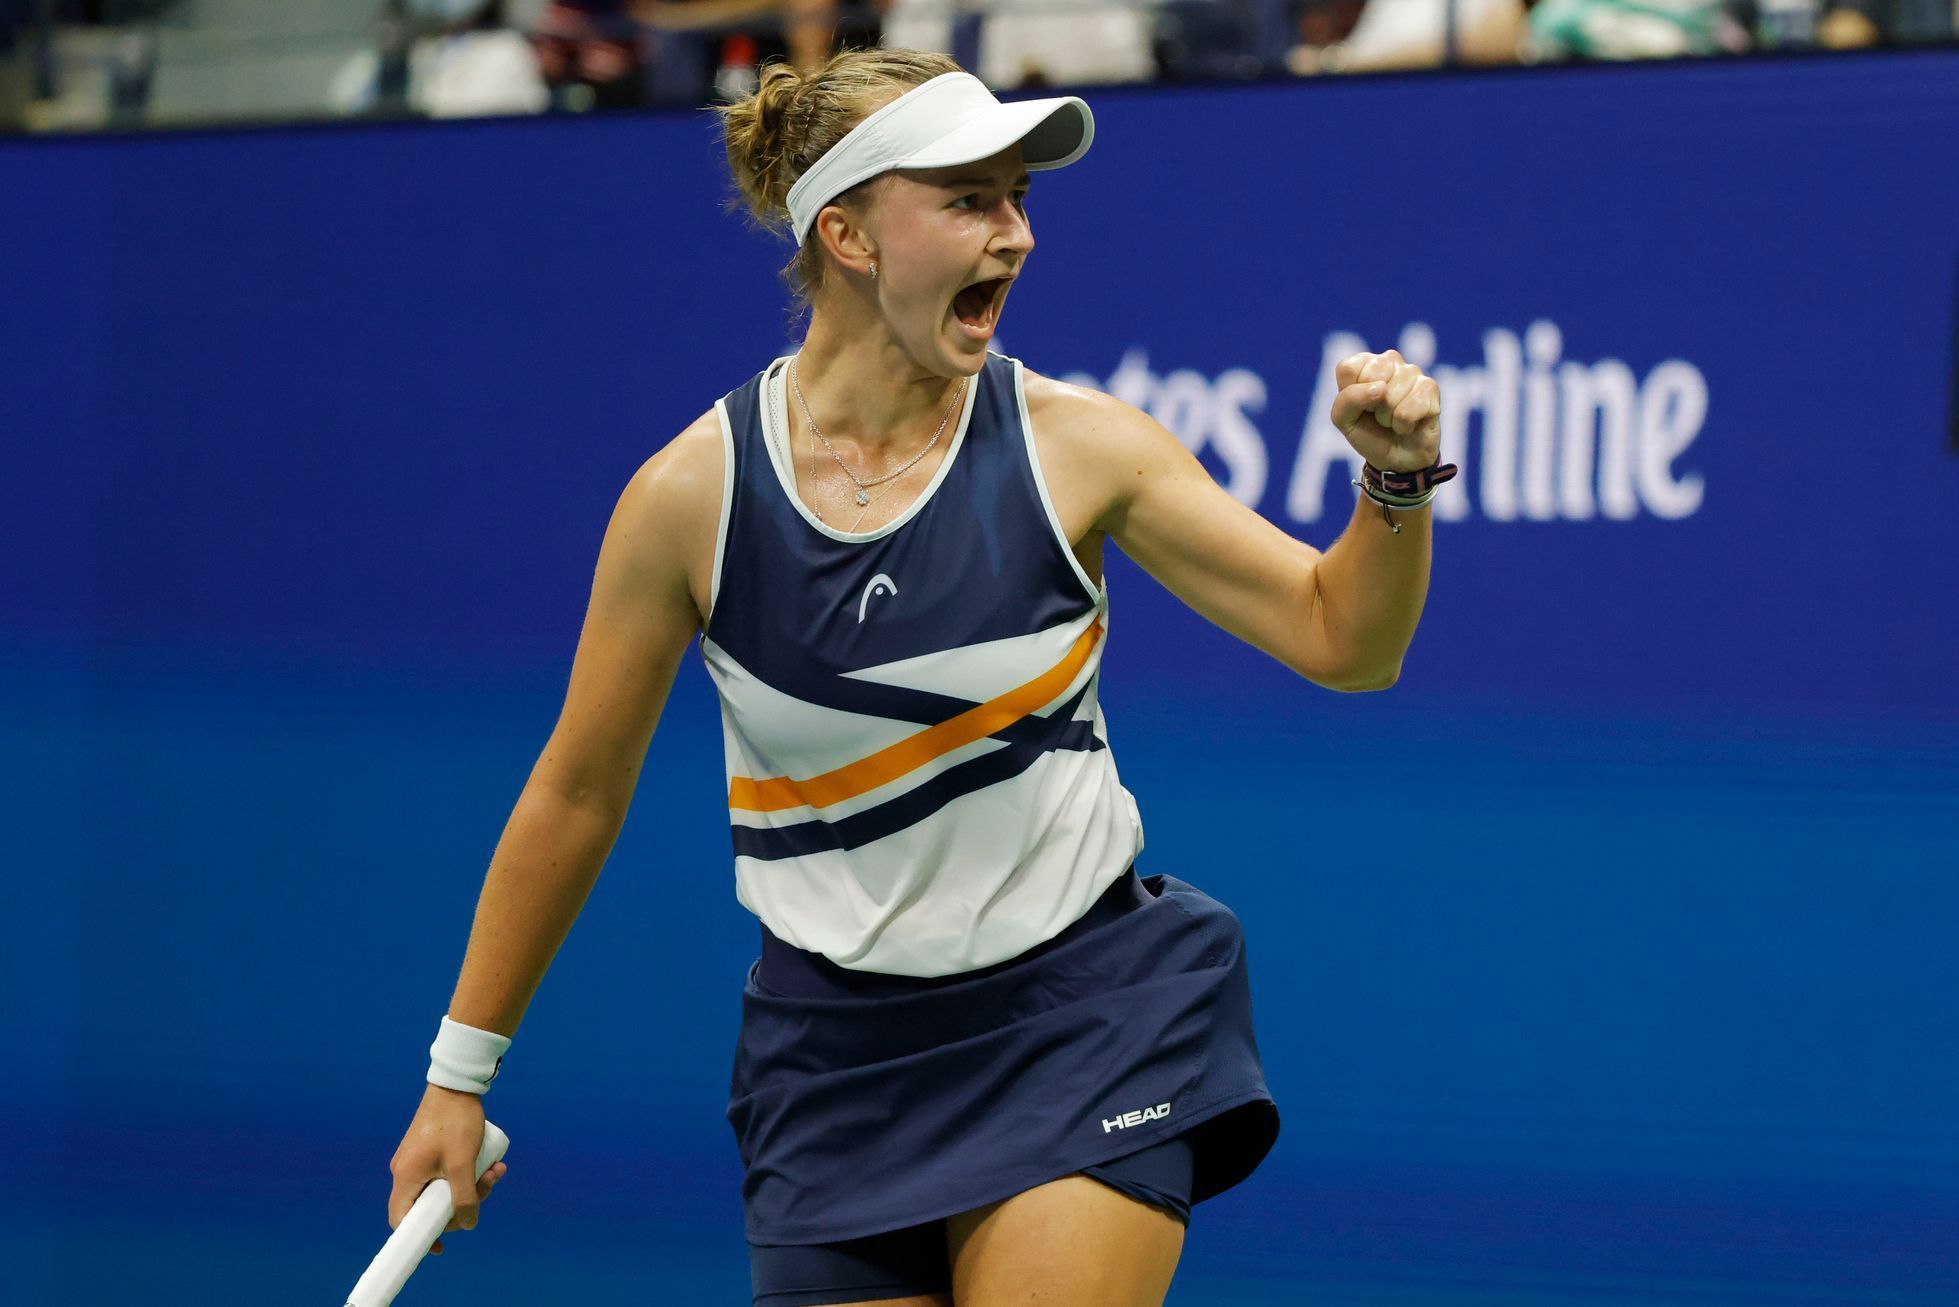 Tenis: US Open 2021, čtvrtfinále, Barbora Krejčíková